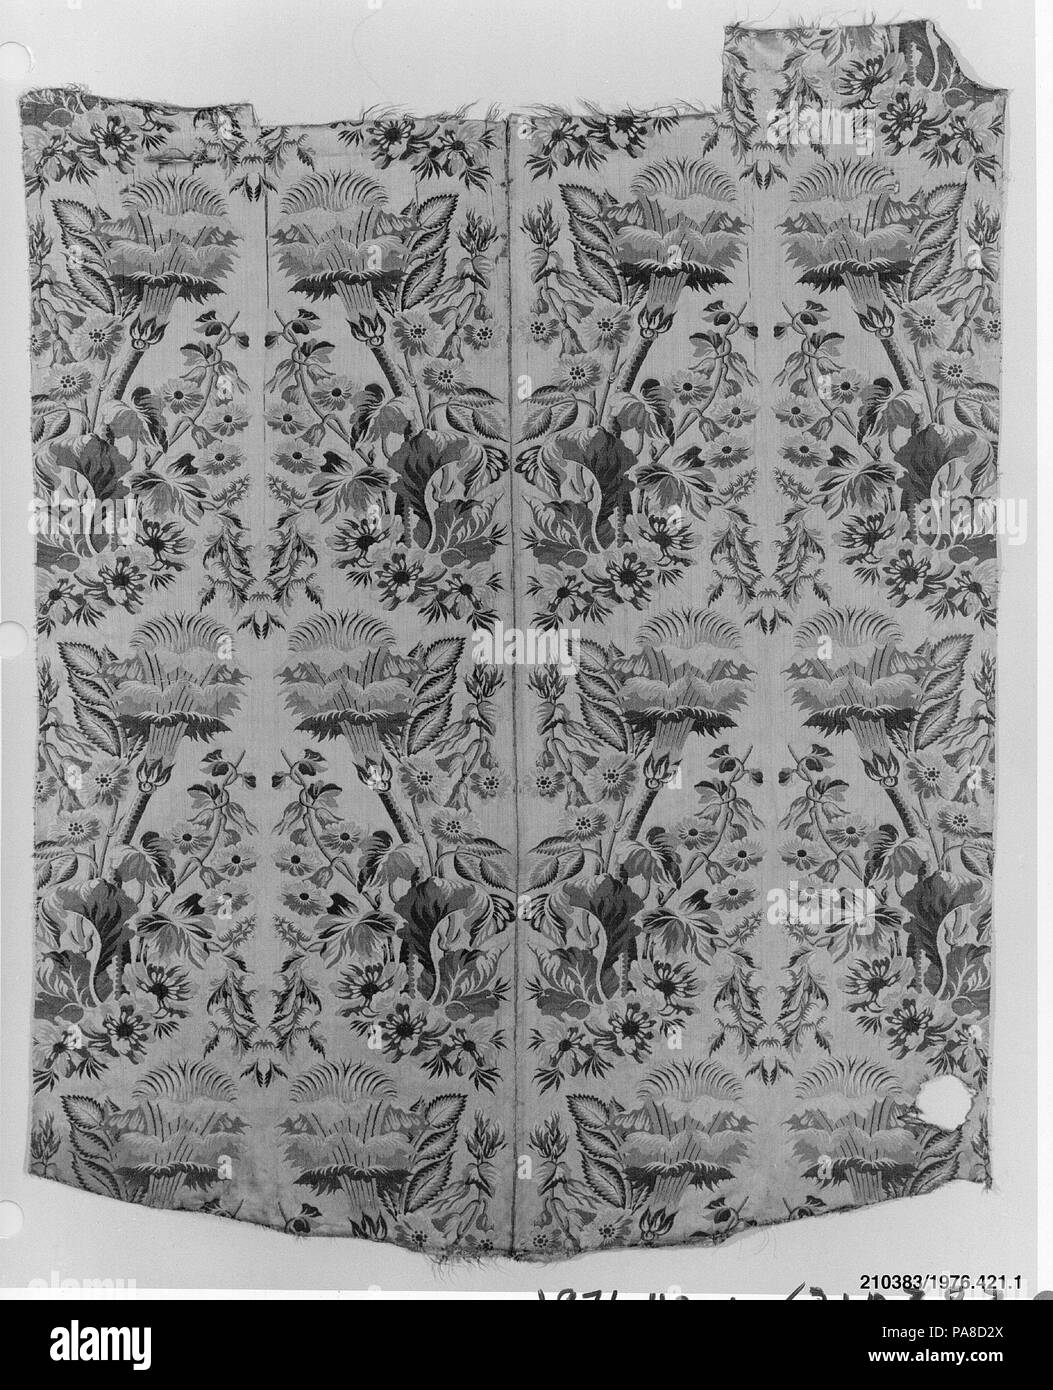 De Bord. Culture : l'italien. Dimensions : L. 46 1/2 (irrég.) x 38 1/2 pouces W. 118,1 x 97,8 cm. Date : le 18e siècle. Musée : Metropolitan Museum of Art, New York, USA. Banque D'Images